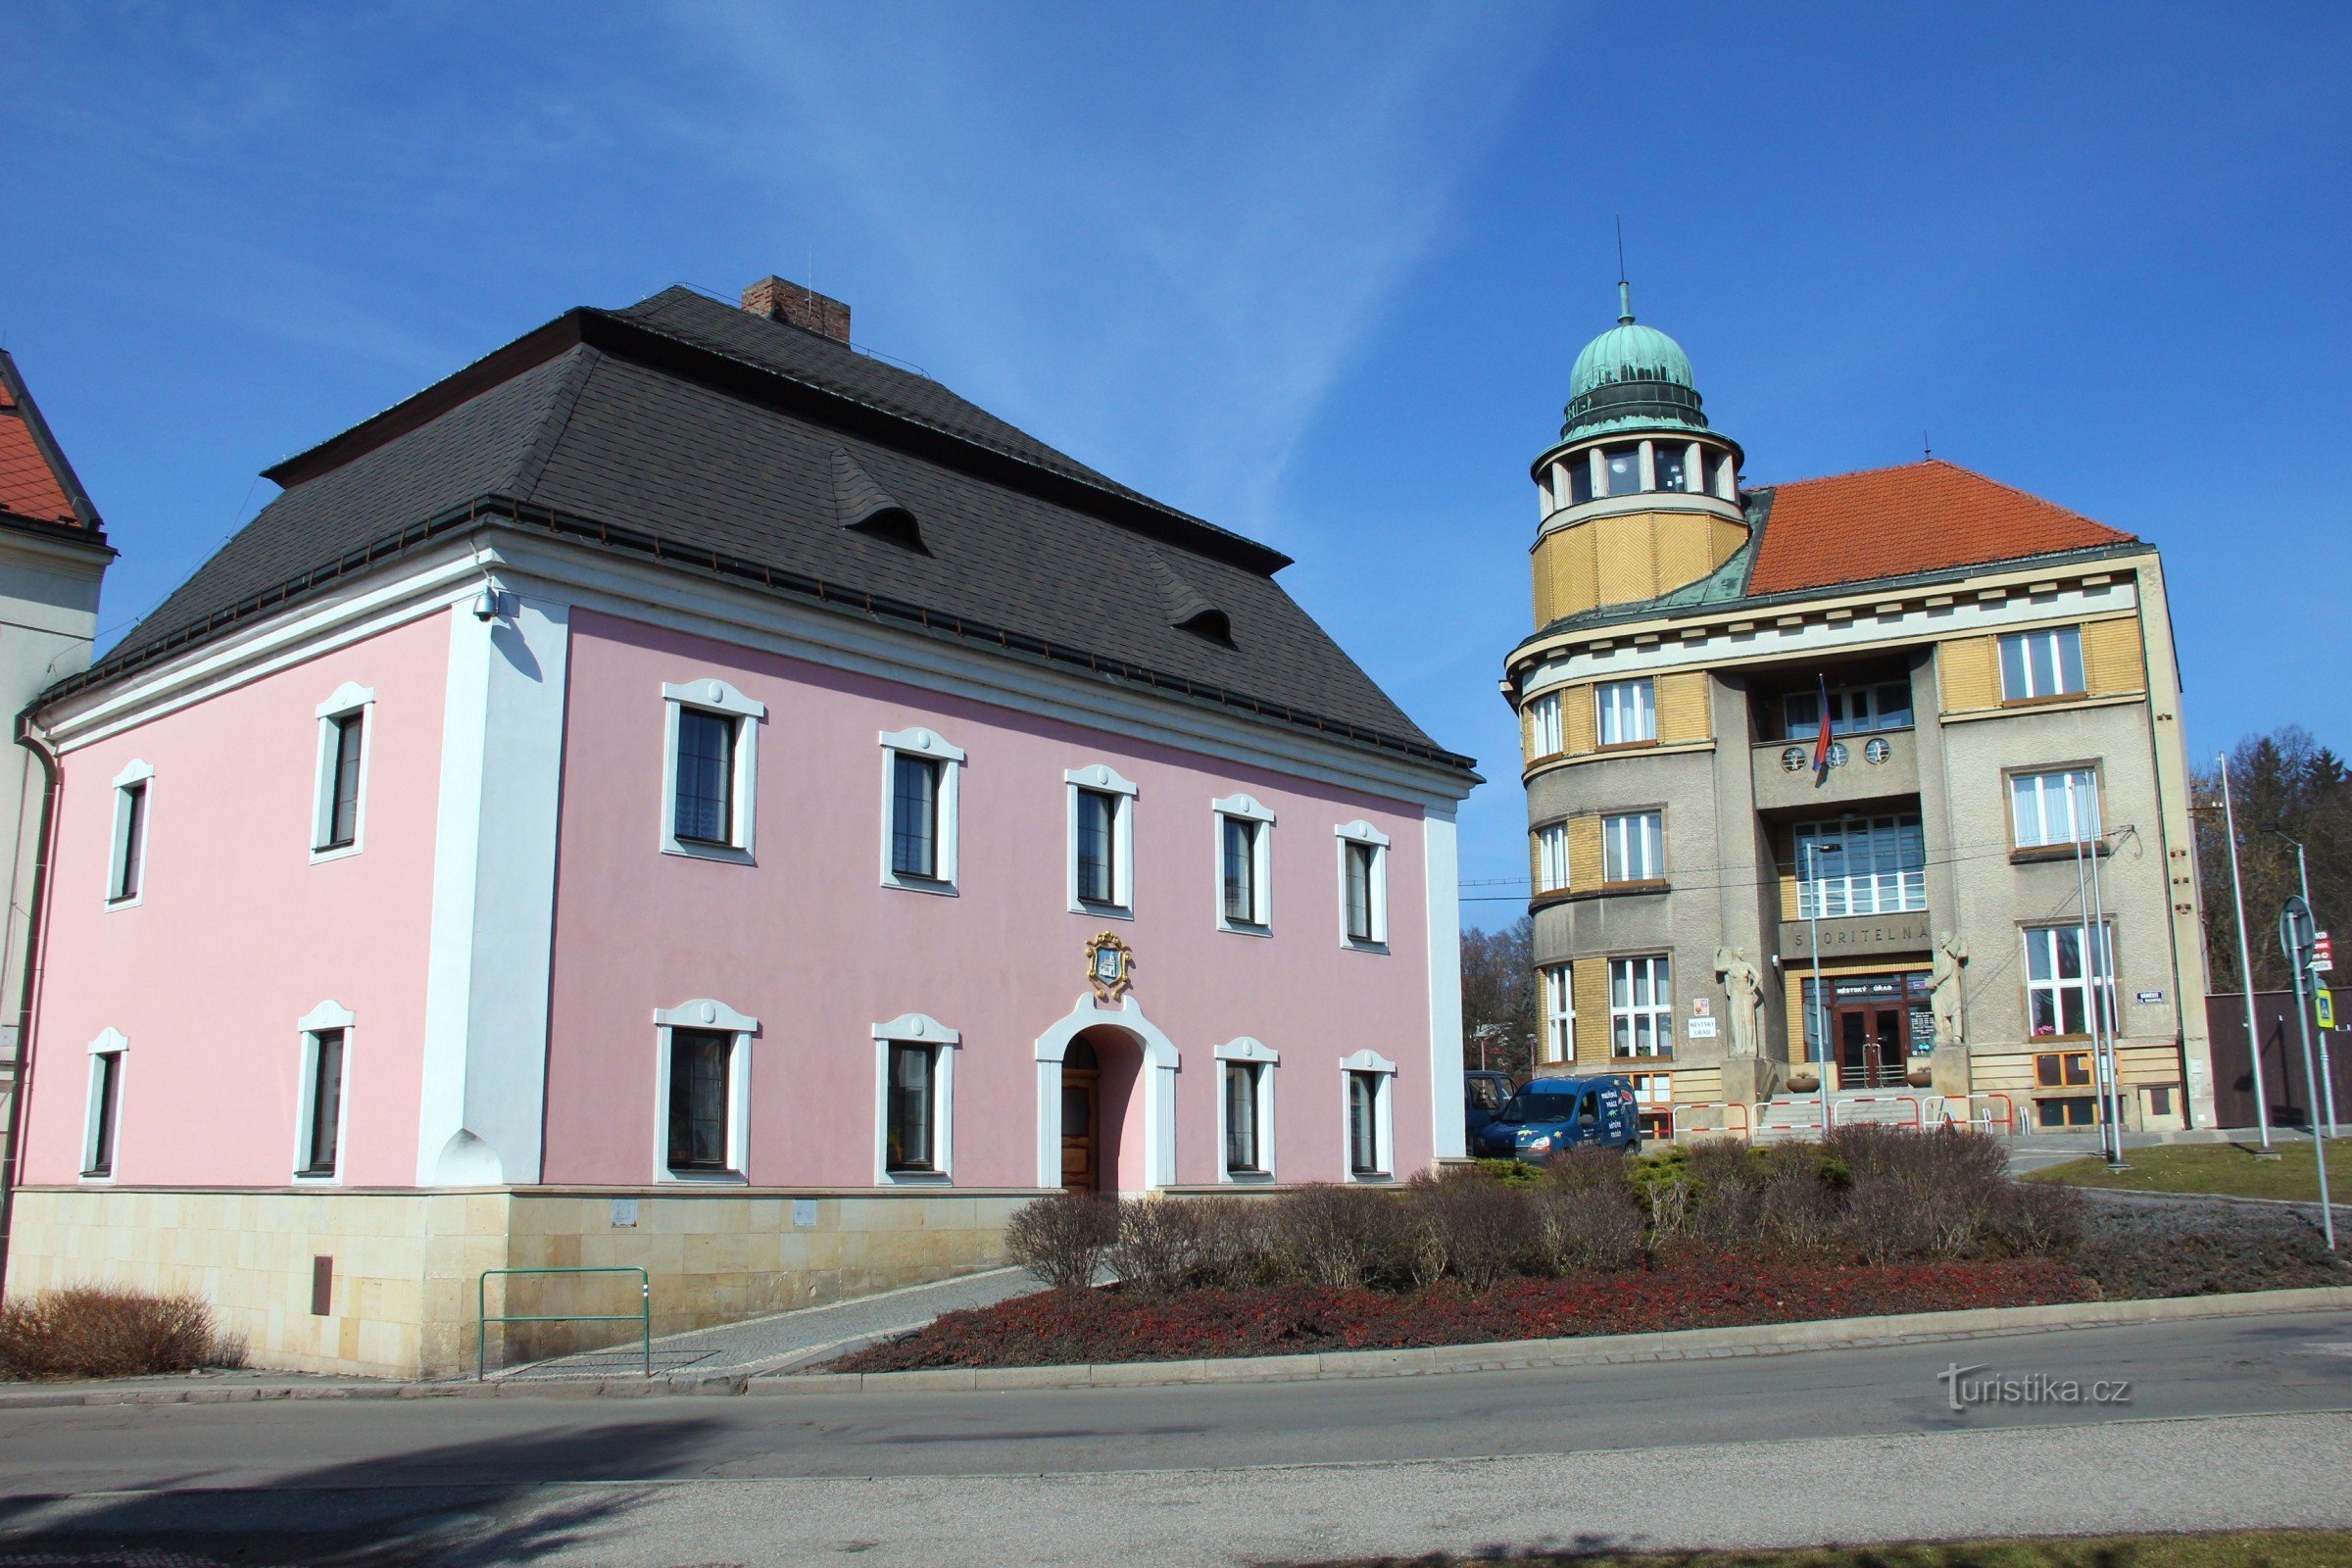 A régi városháza Červený Kostelecben